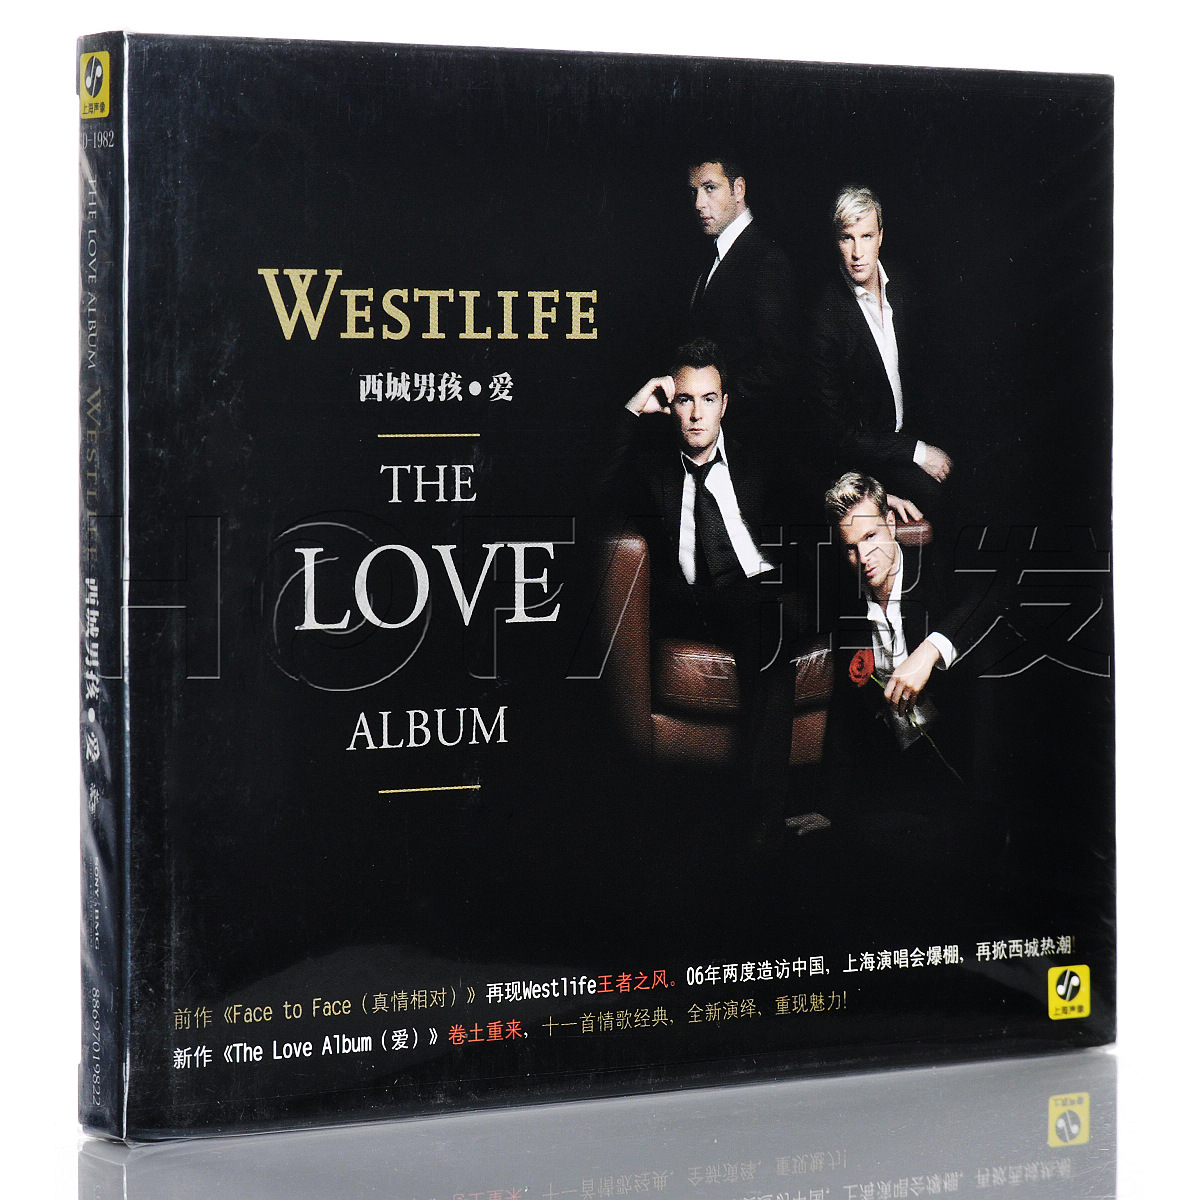 新索正版 Westlife西城男孩 The Love Album爱专辑CD-封面